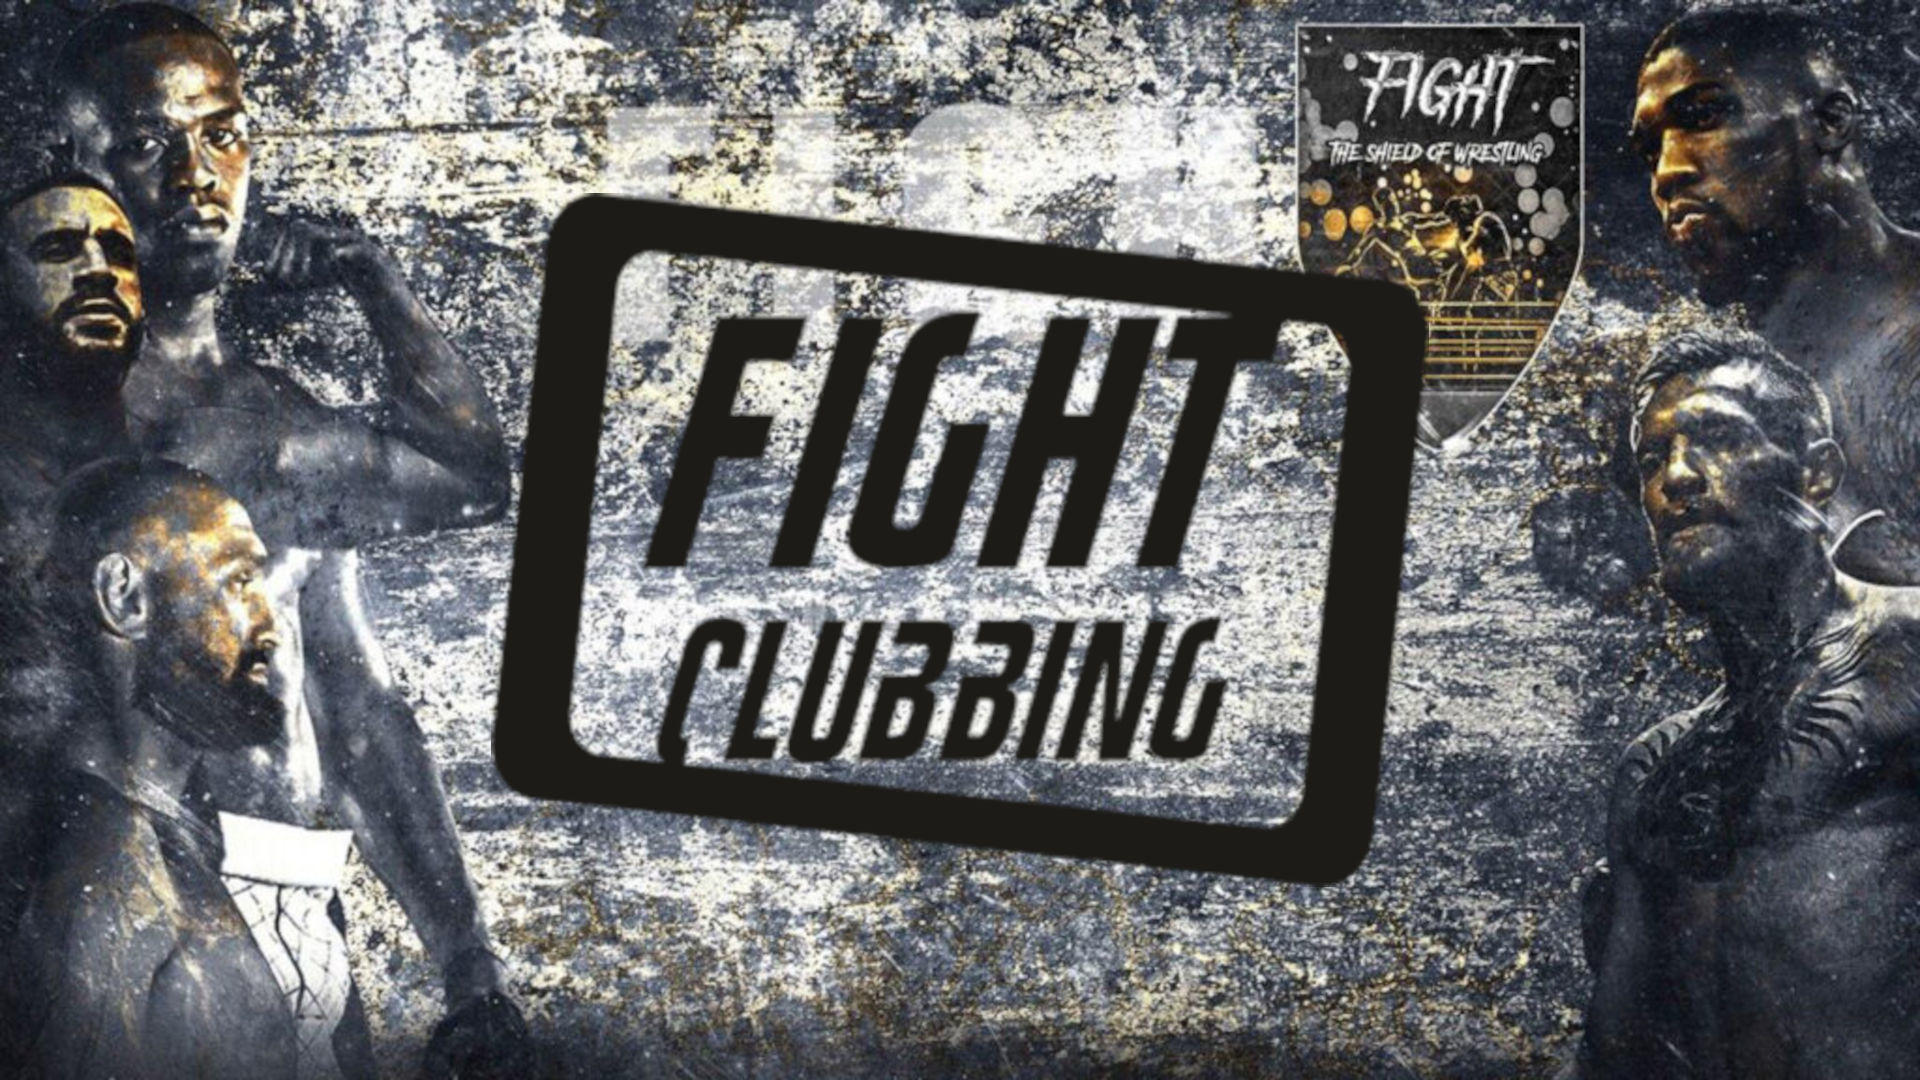 Fight Clubbing 29: Intervista a Nando Calzetta